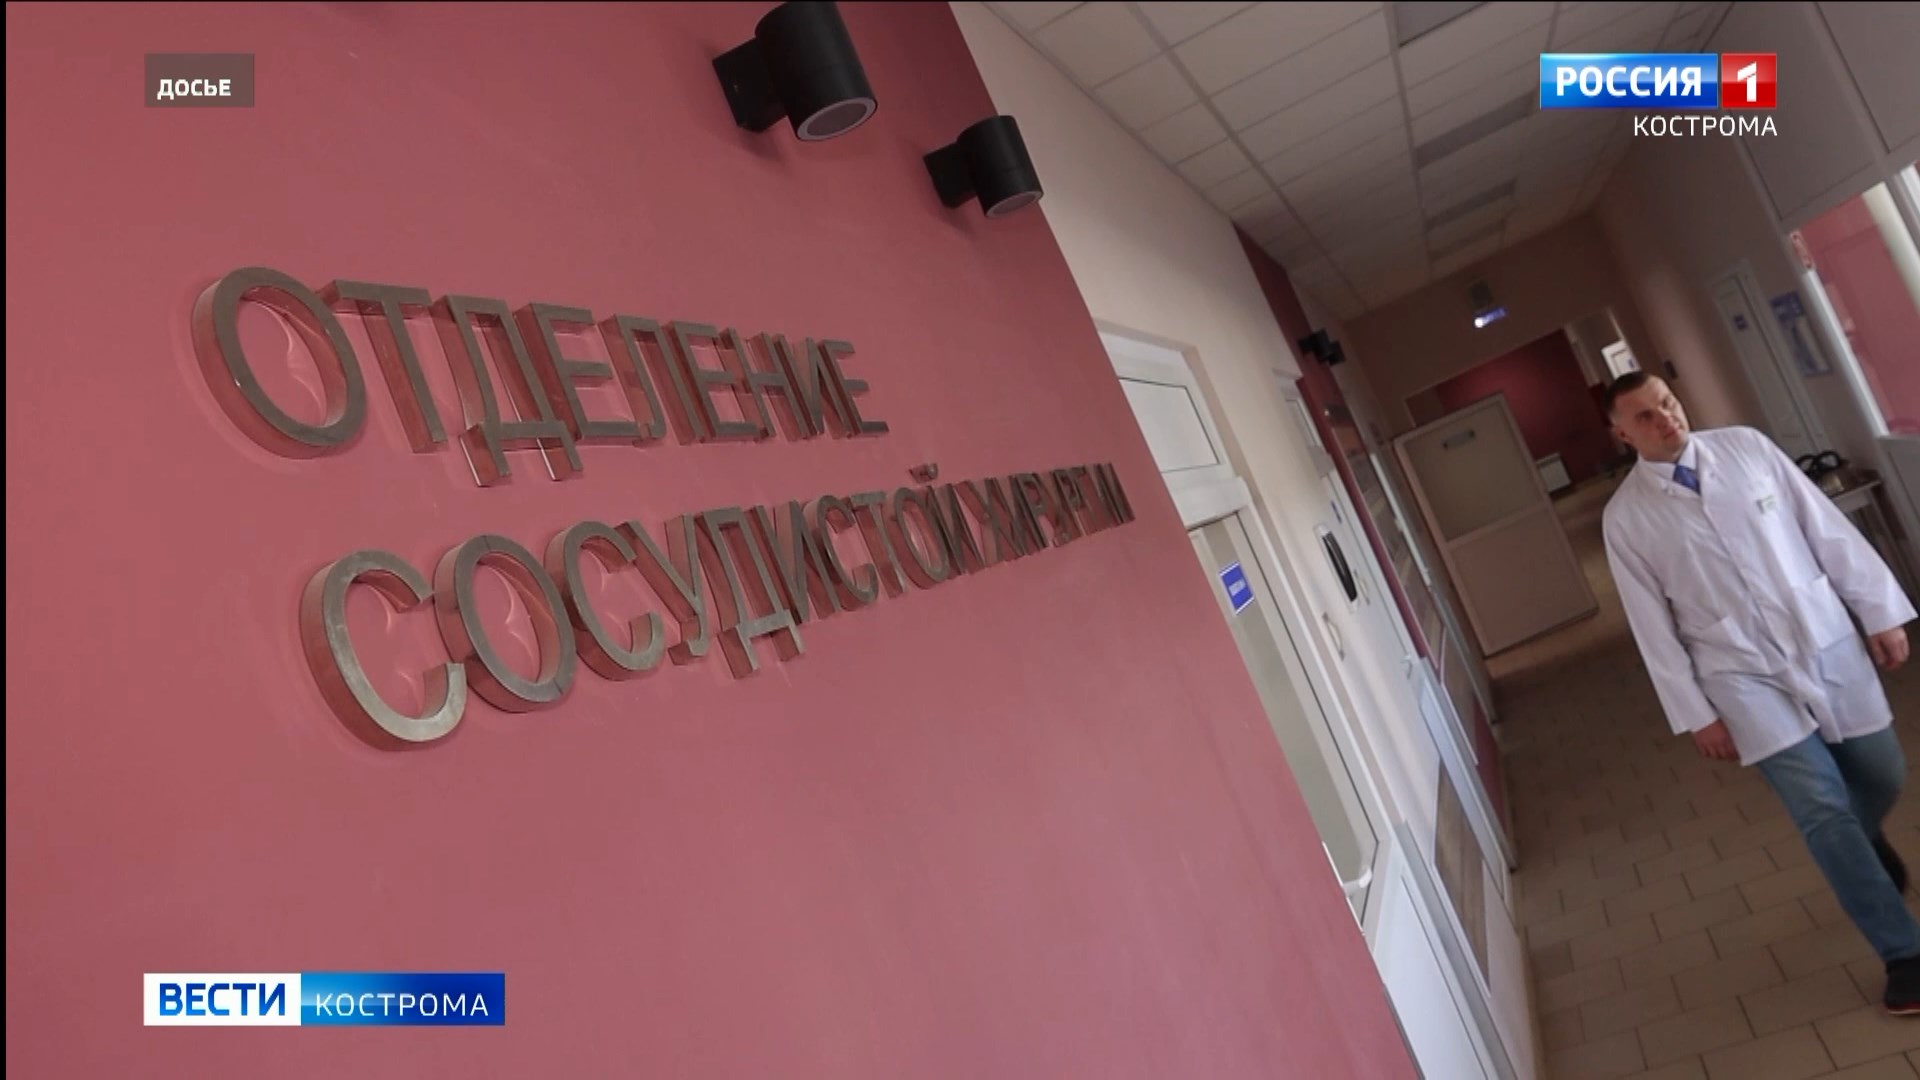 Ситуацией в сосудистом отделении Костромской областной больницы займутся компетентные органы